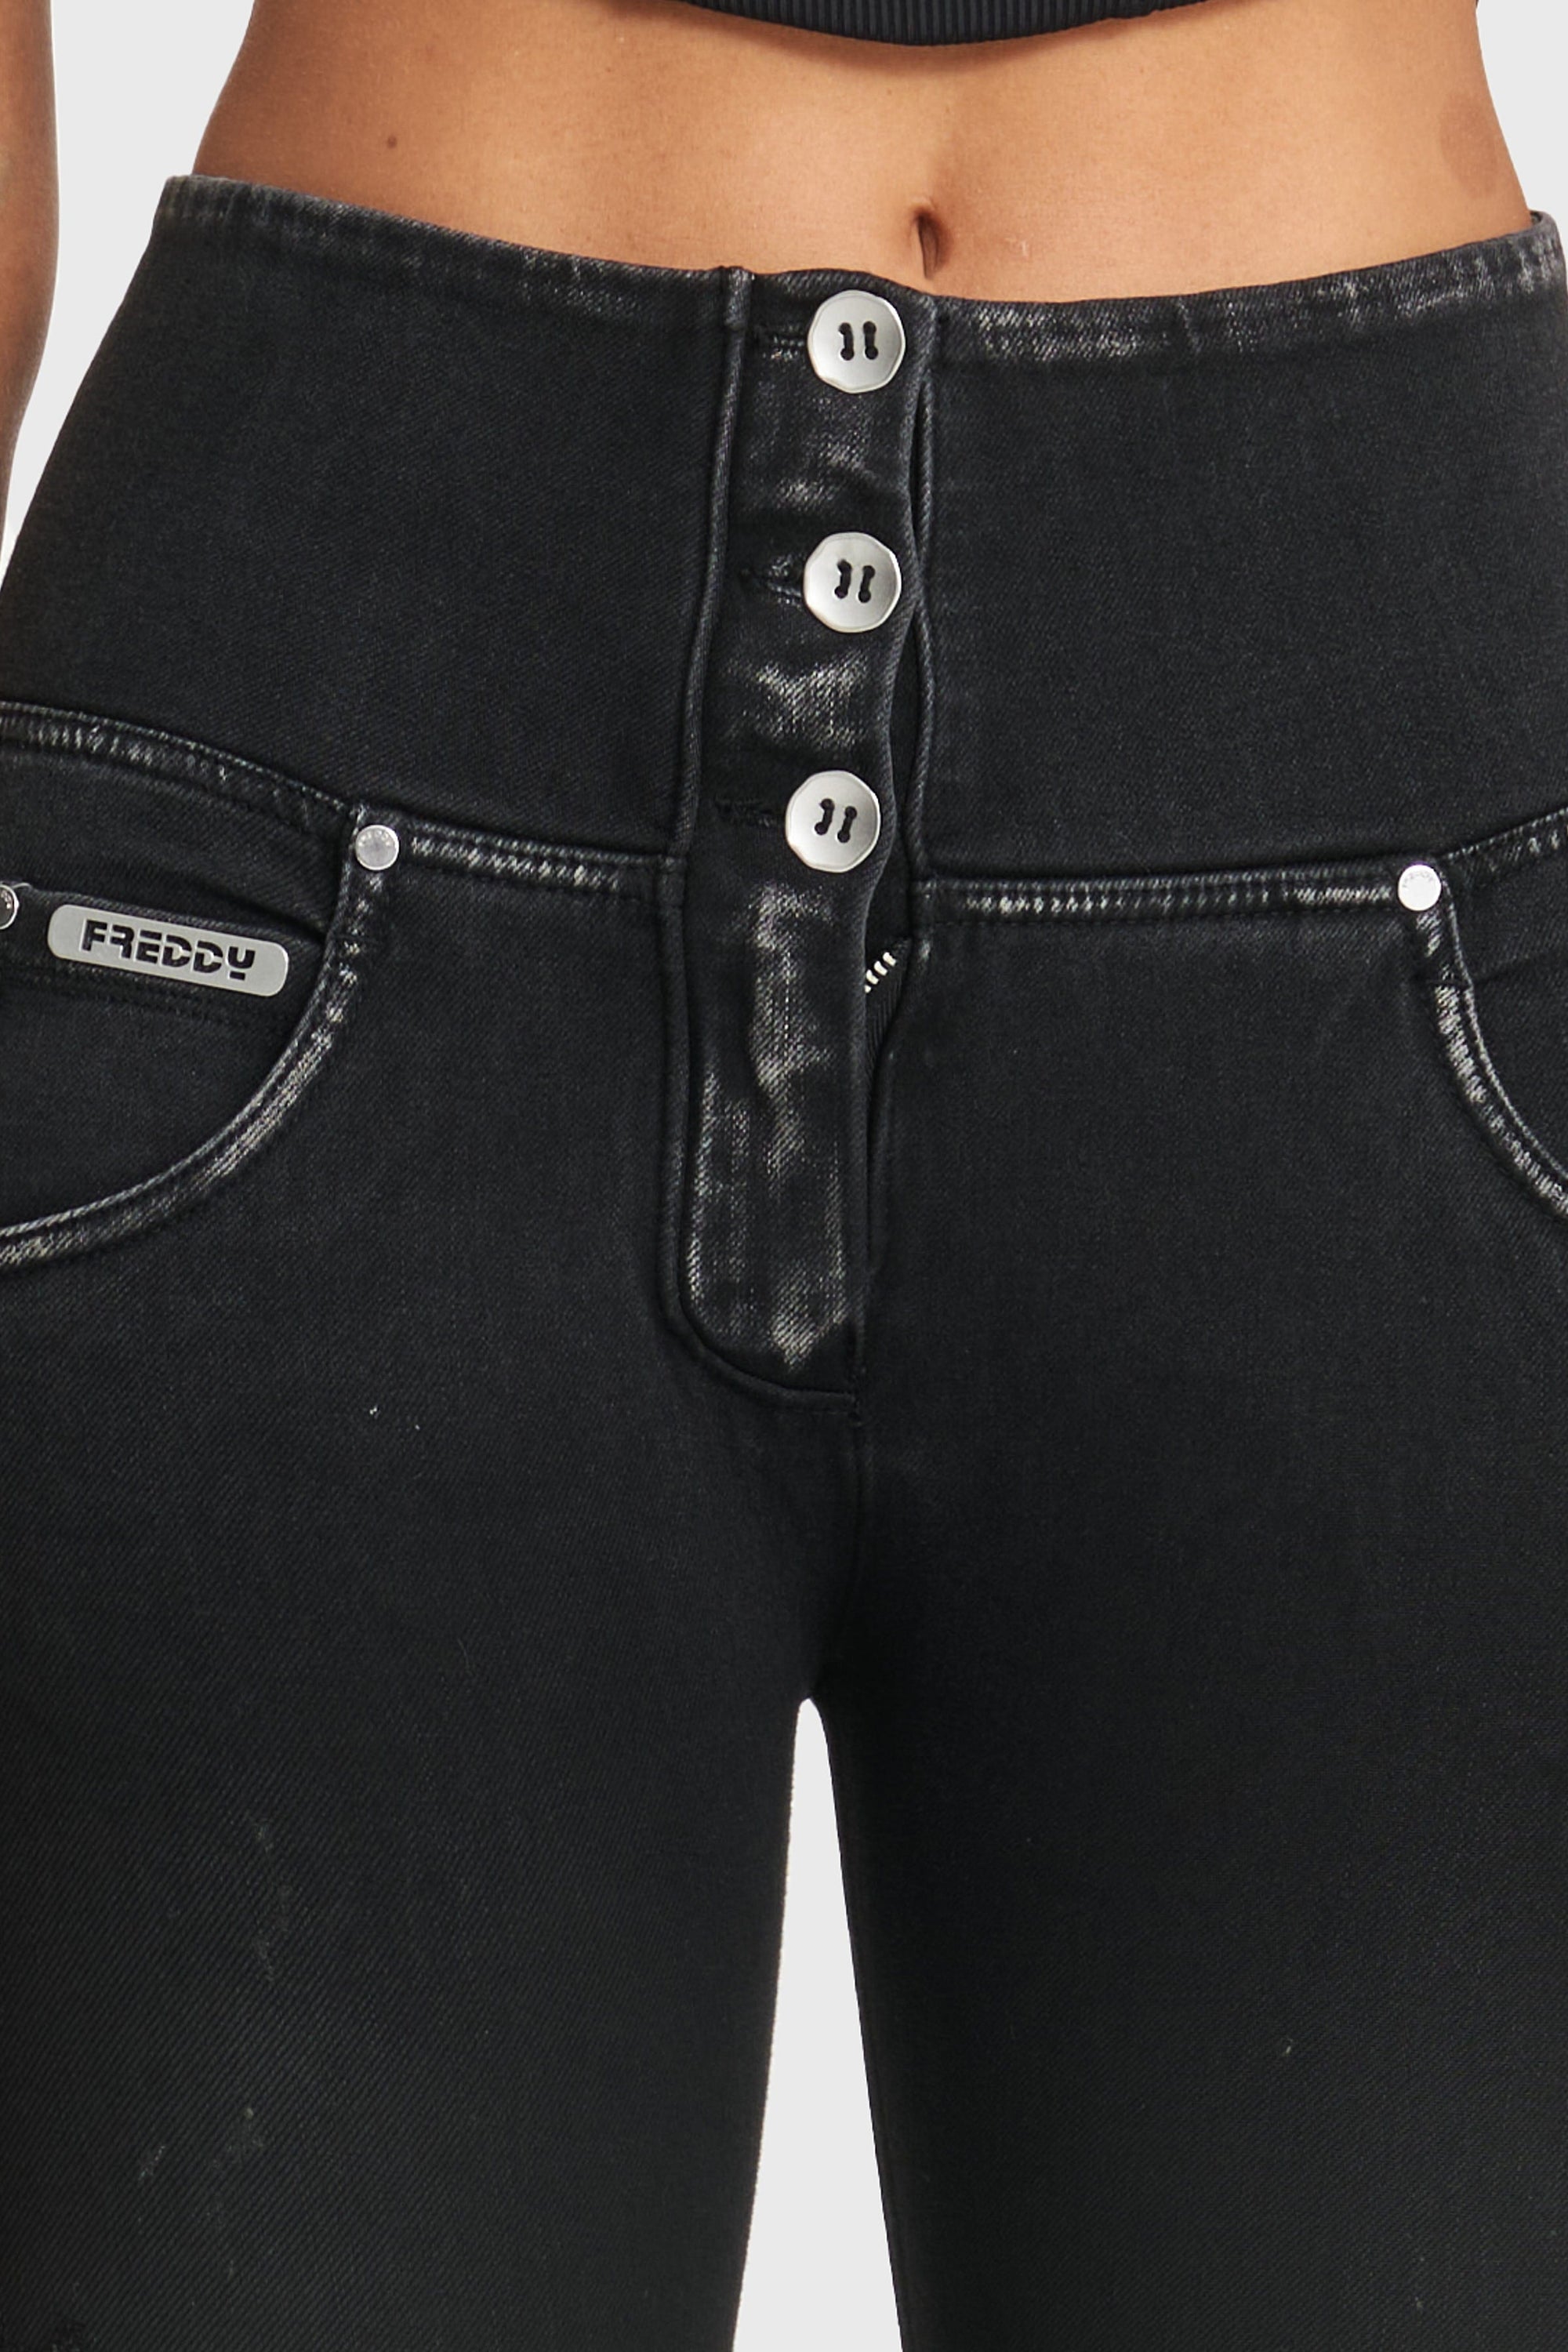 WR.UP® Snug Ripped Jeans - Cintura alta - Largo completo - Negro revestido + Costuras negras  10